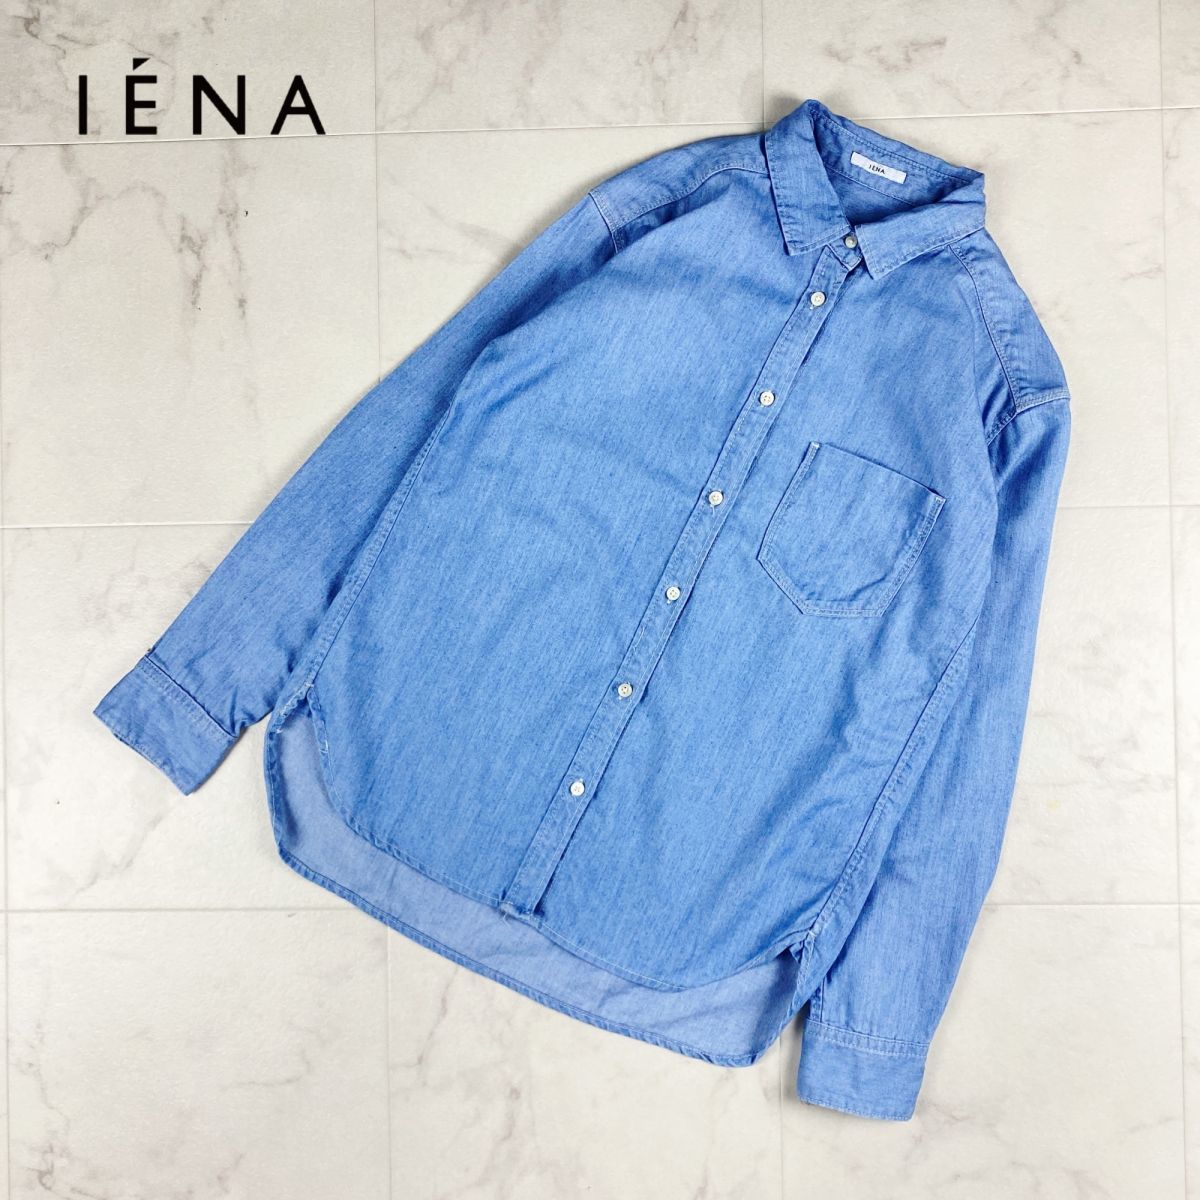 【初回限定】 美品 IENA イエナ フロントポケットデニムシャツ トップス レディース 青 ブルー サイズ38*GC1013 長袖シャツ